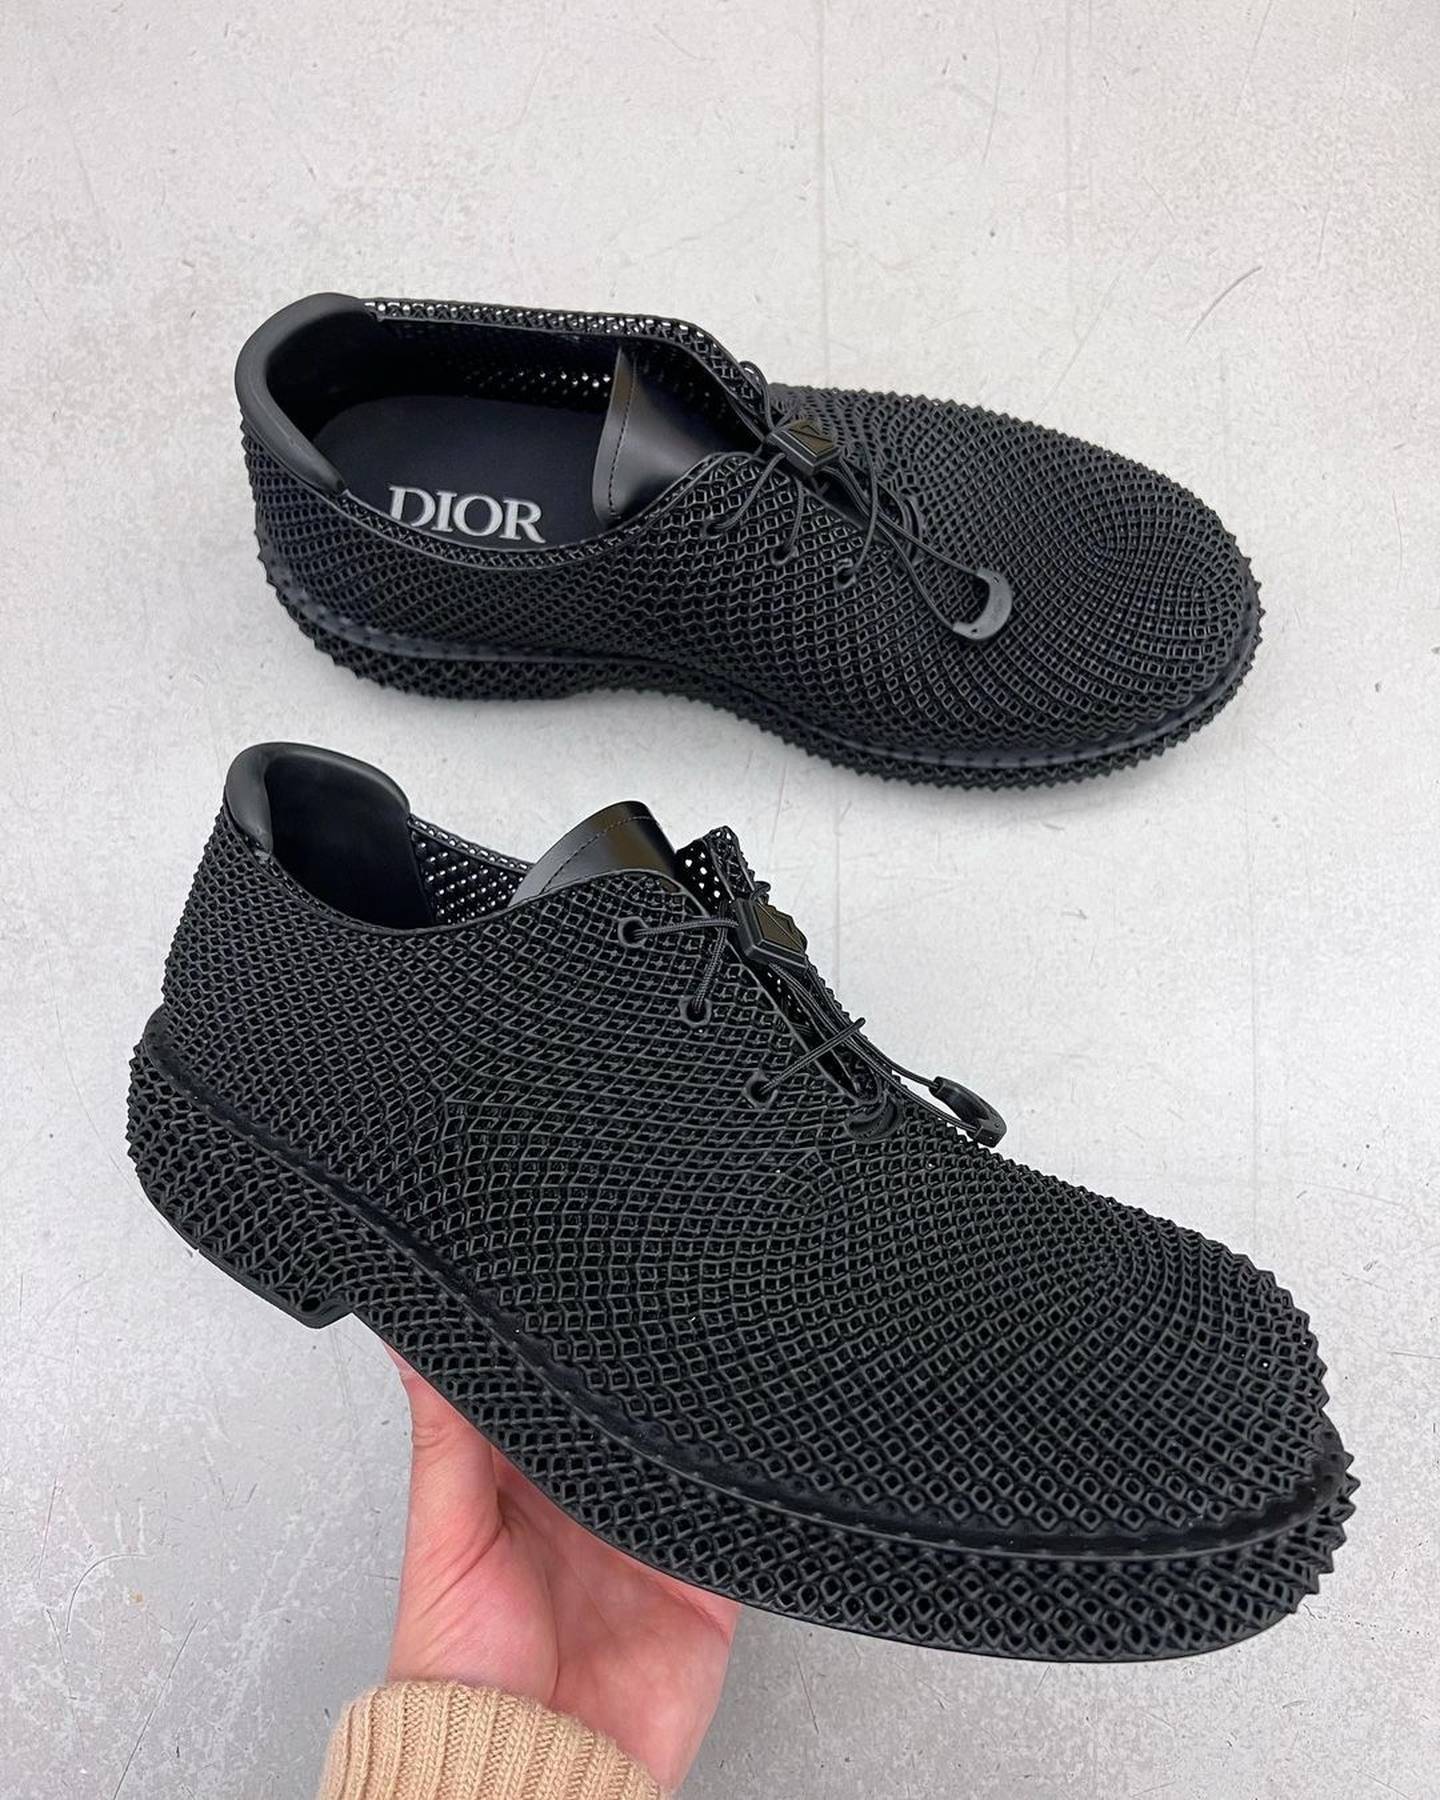 Zapatos de Dior hechos en impresión 3D